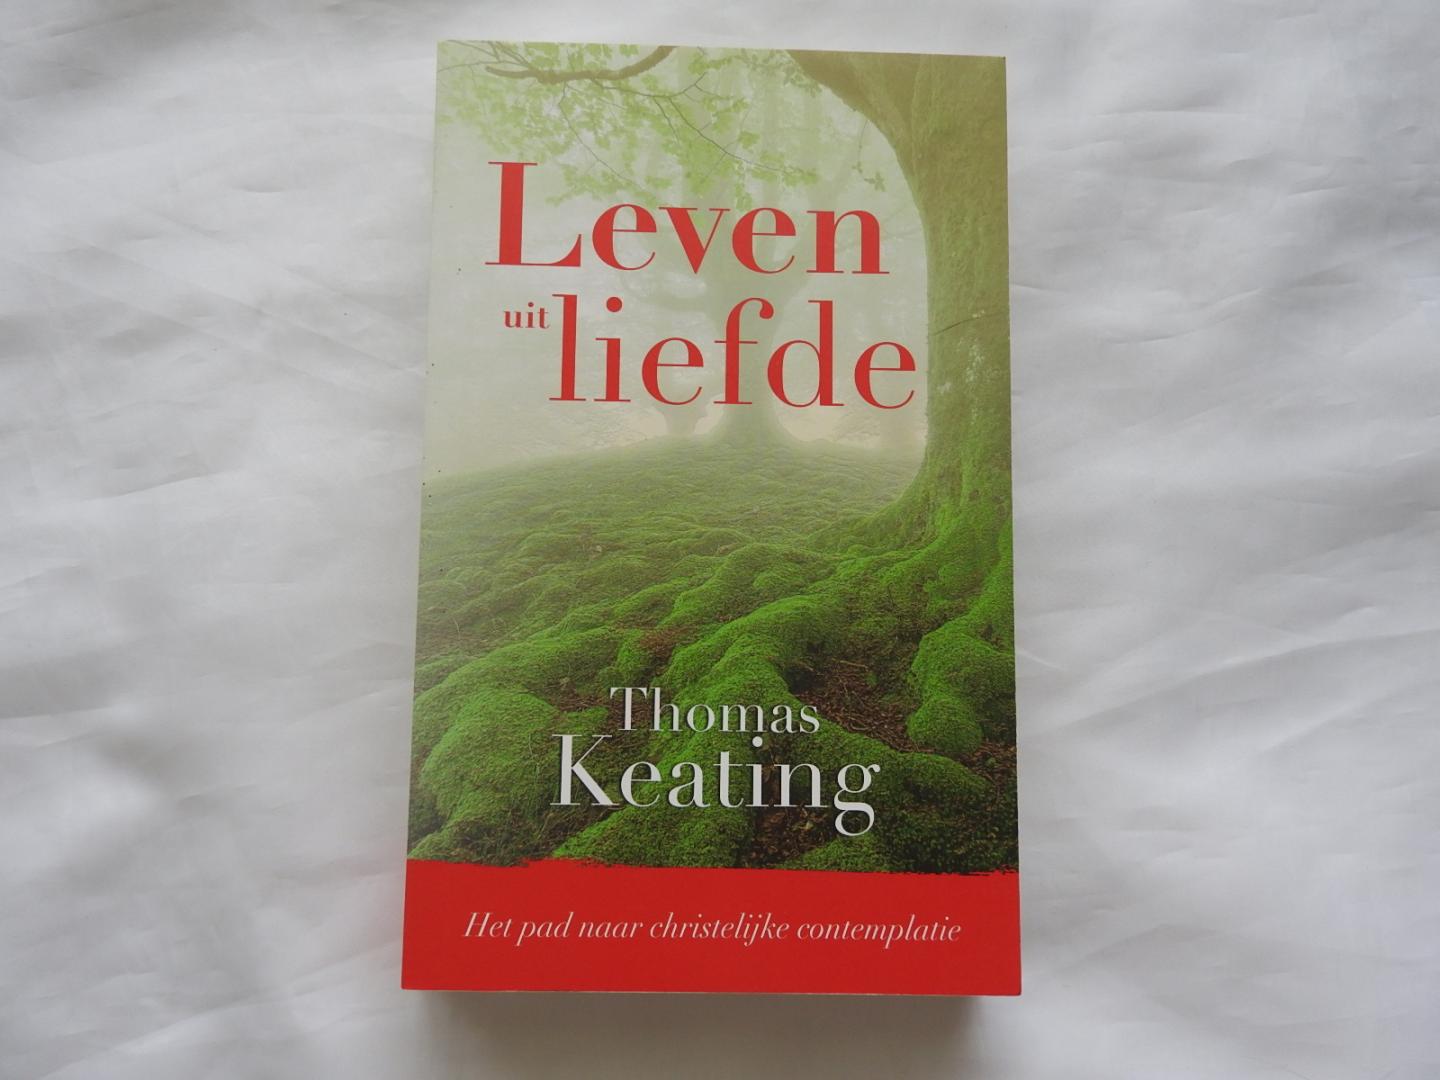 Keating, Thomas - Leven uit liefde - Het pad naar christelijke contemplatie